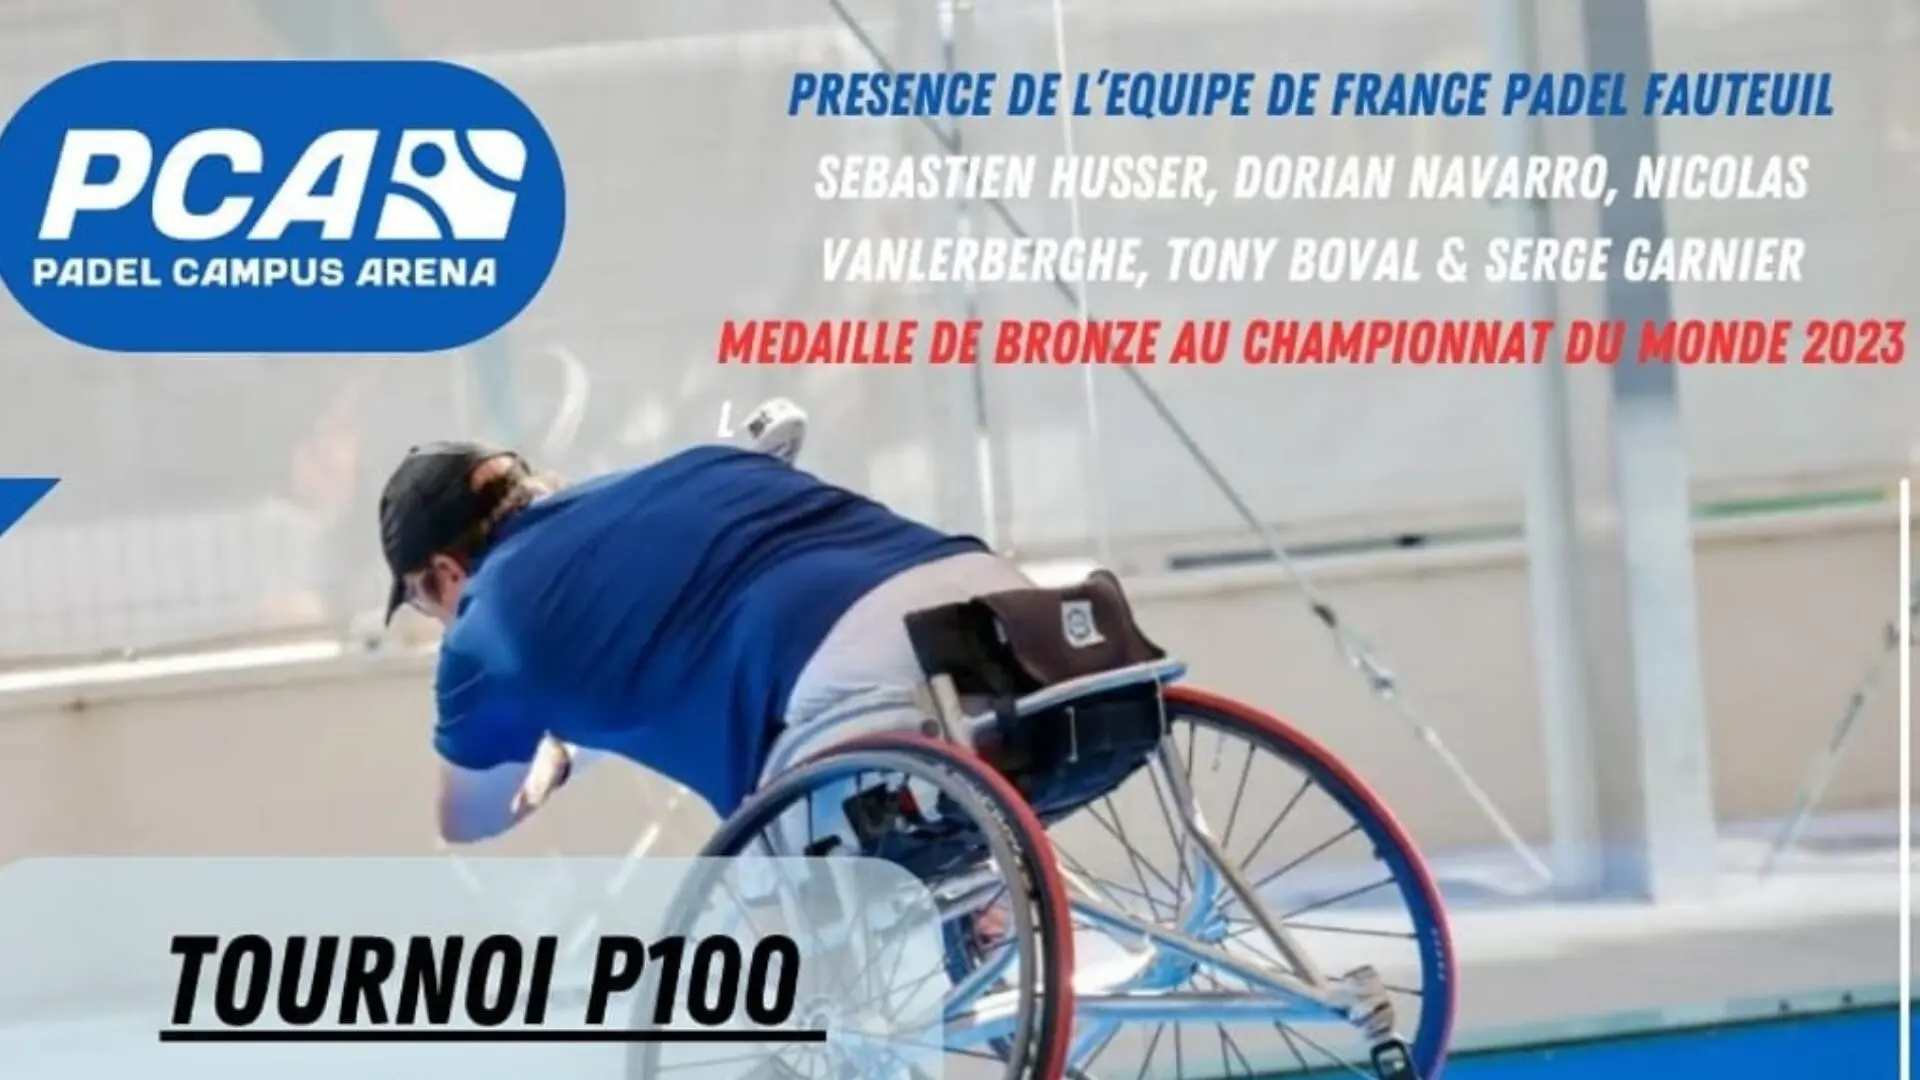 Padel-fauteuil – A P100 tot Padel Campus Arena met 11 van de 20 beste Fransen!